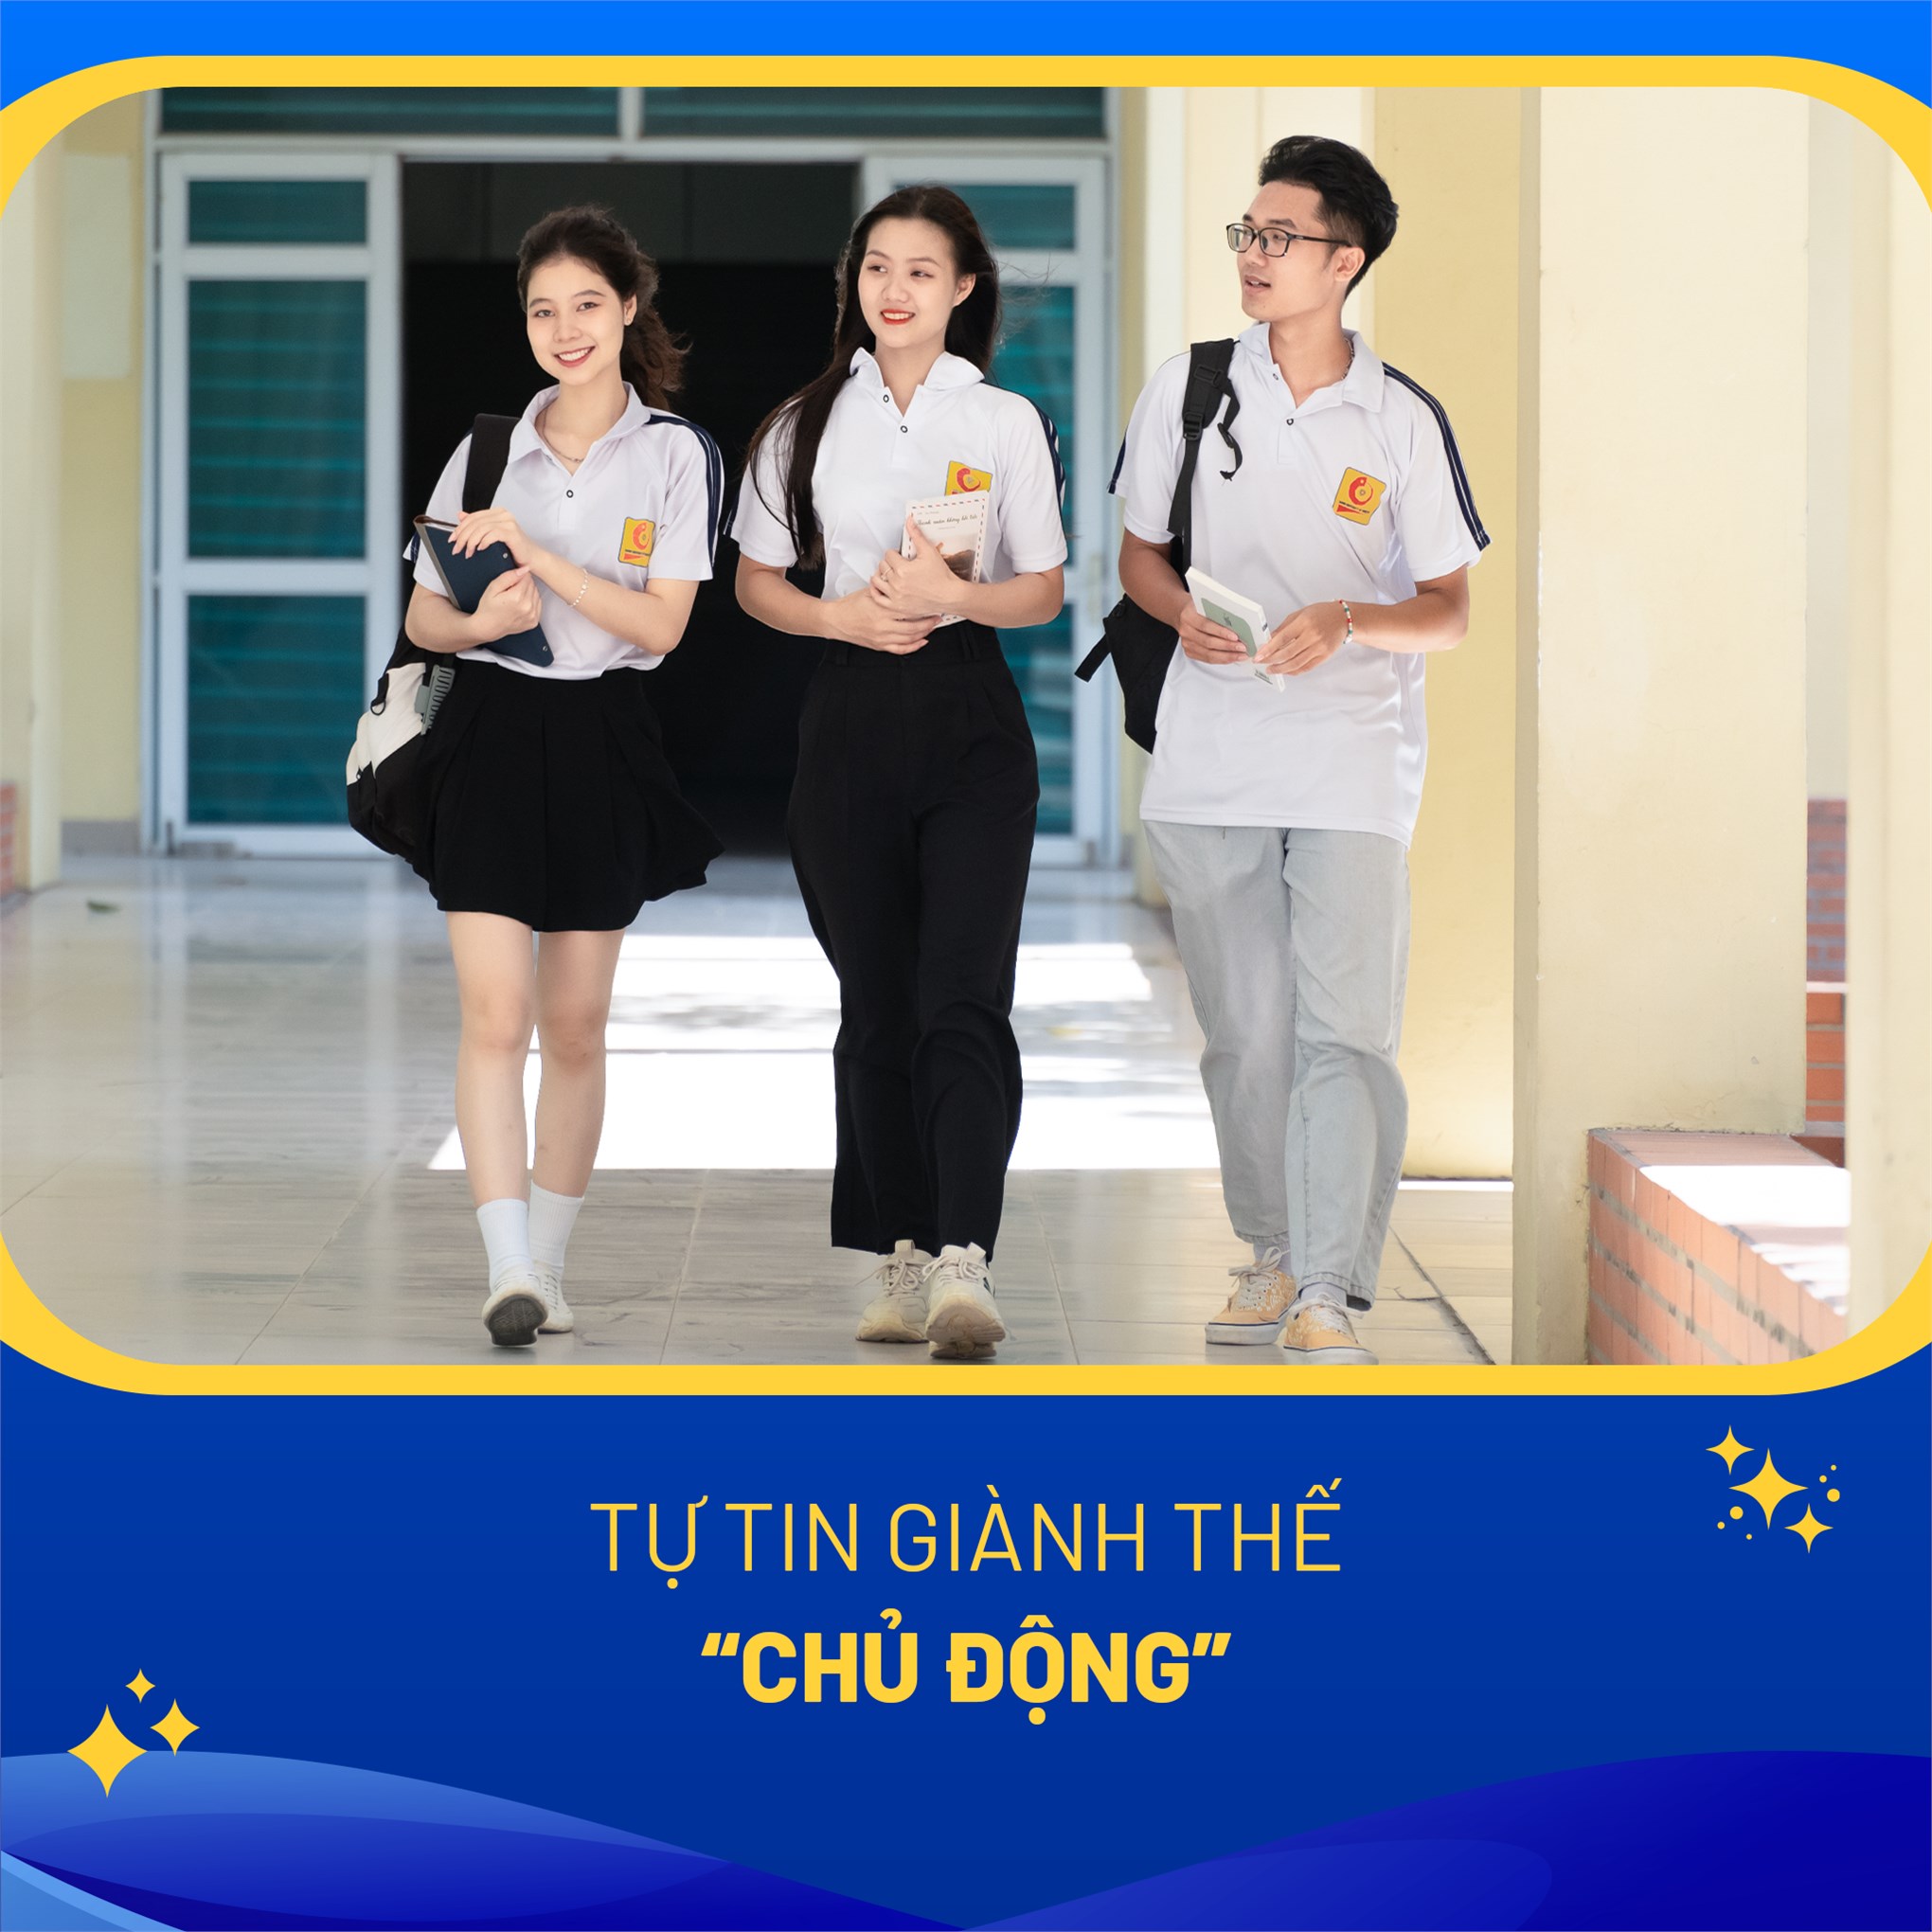 Chớp ngay cơ hội trúng tuyển sớm vào Trường Ngoại ngữ - Du lịch, Đại học Công nghiệp Hà Nội bằng hình thức xét tuyển học bạ